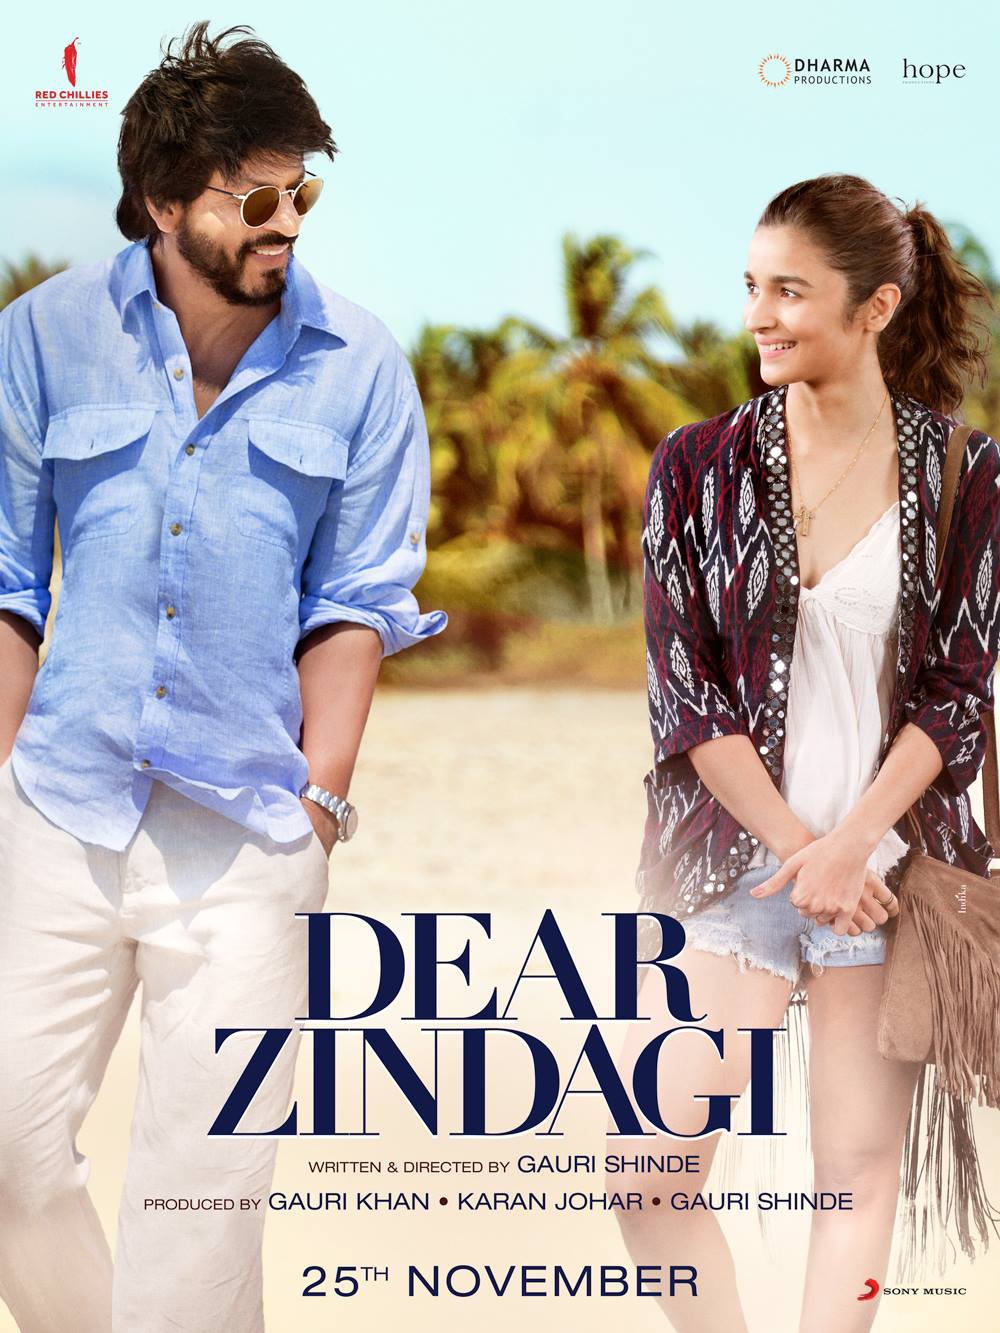 Extra Large Movie Poster Image for Dear Zindagi (#2 of 2)